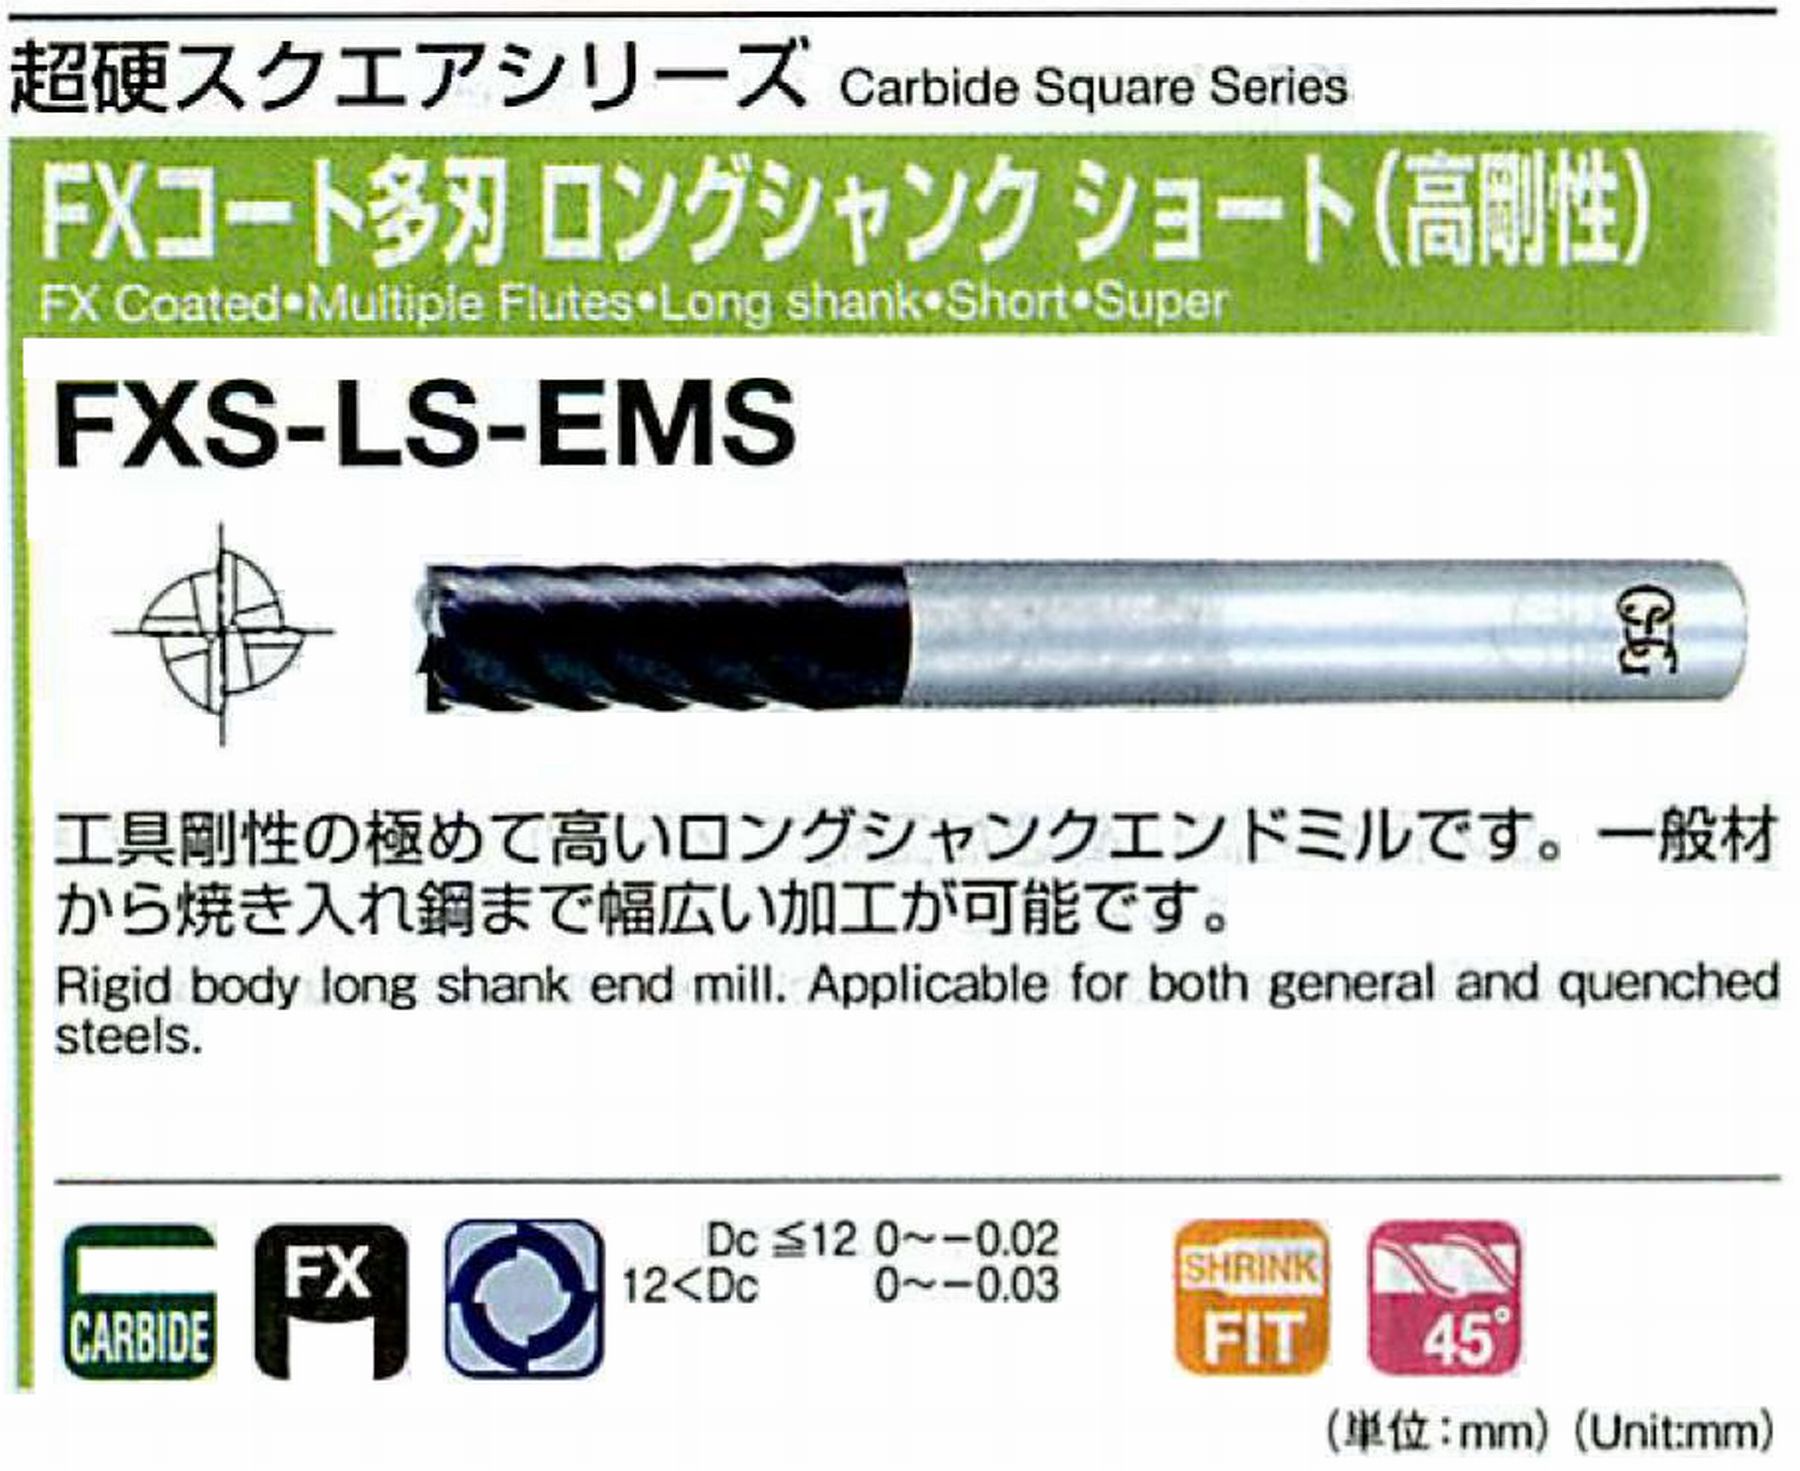 オーエスジー/OSG FXコート多刃 ロングシャンクショート(高剛性) FXS-LS-EMS 外径30×25 全長200 刃長55 シャンク径25mm 刃数8